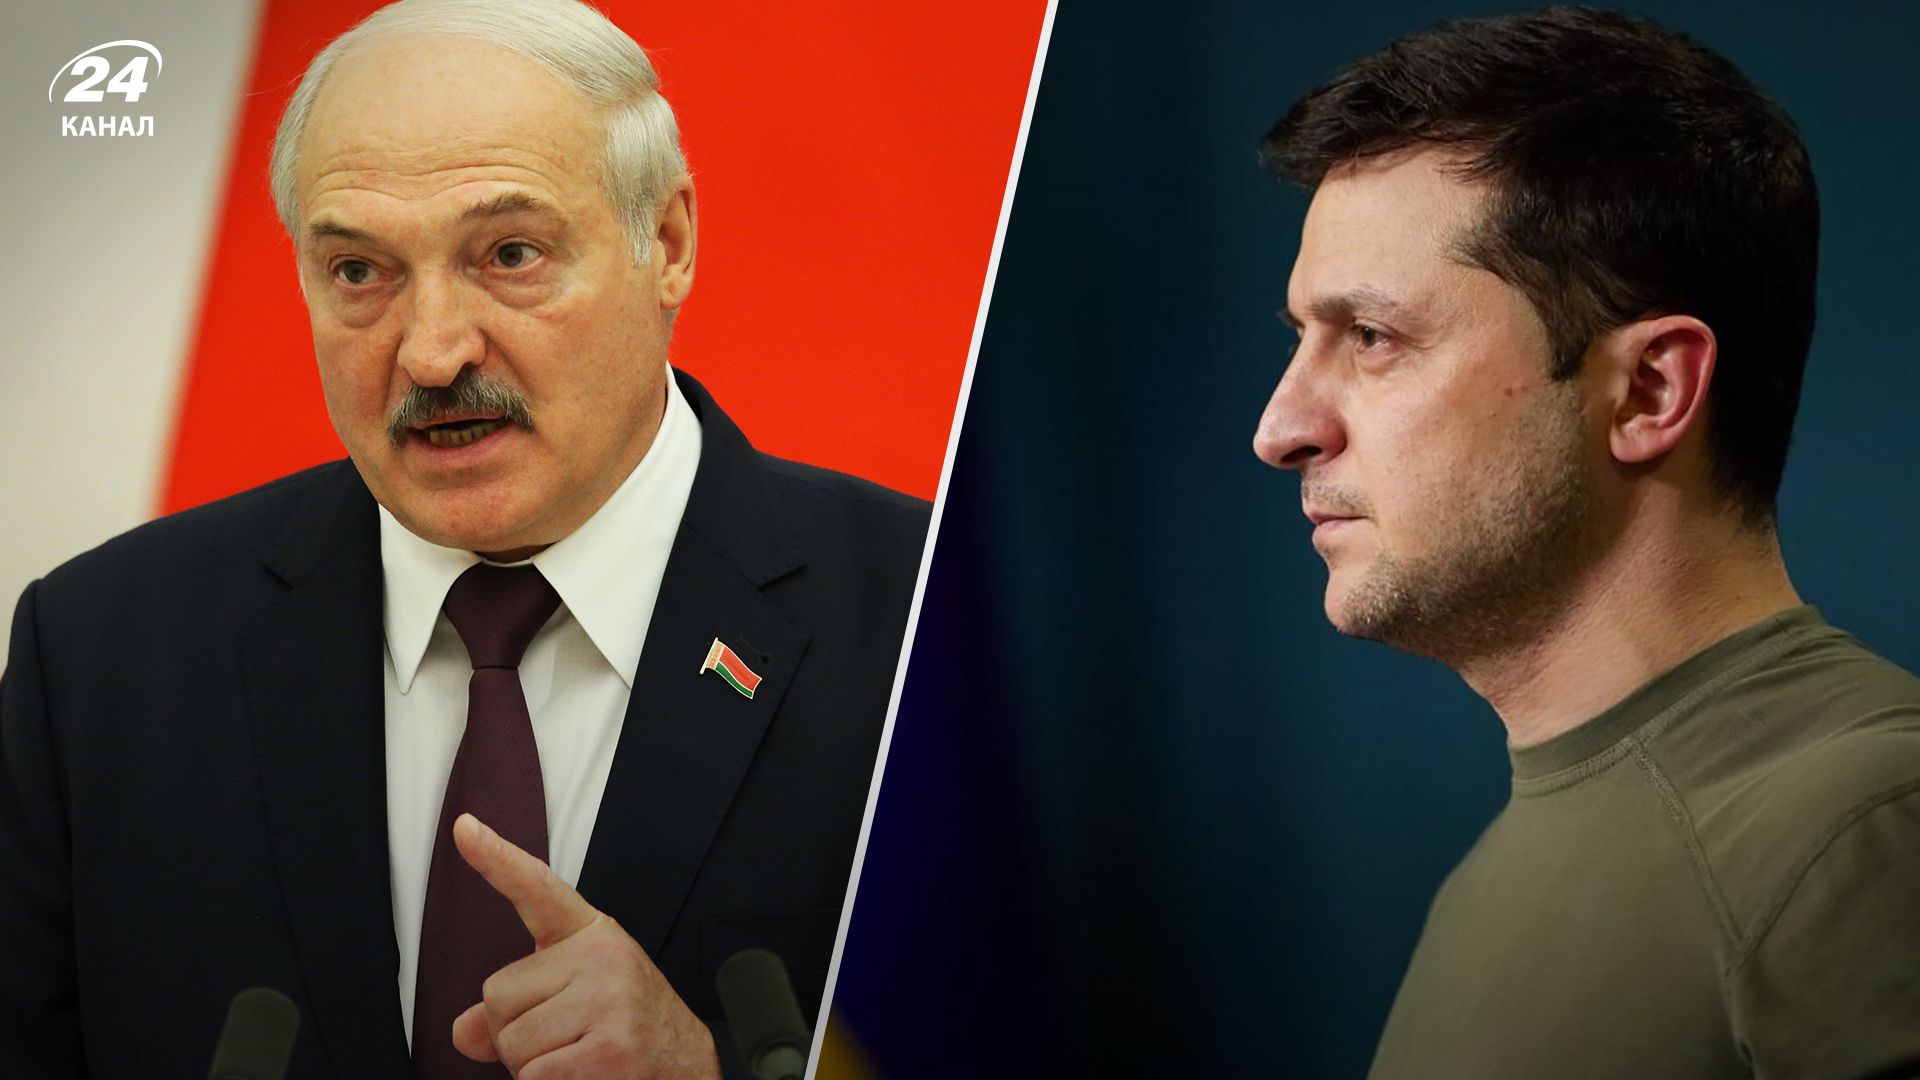 Лукашенко назвав Зеленського гнидою - як відреагували у МЗС України